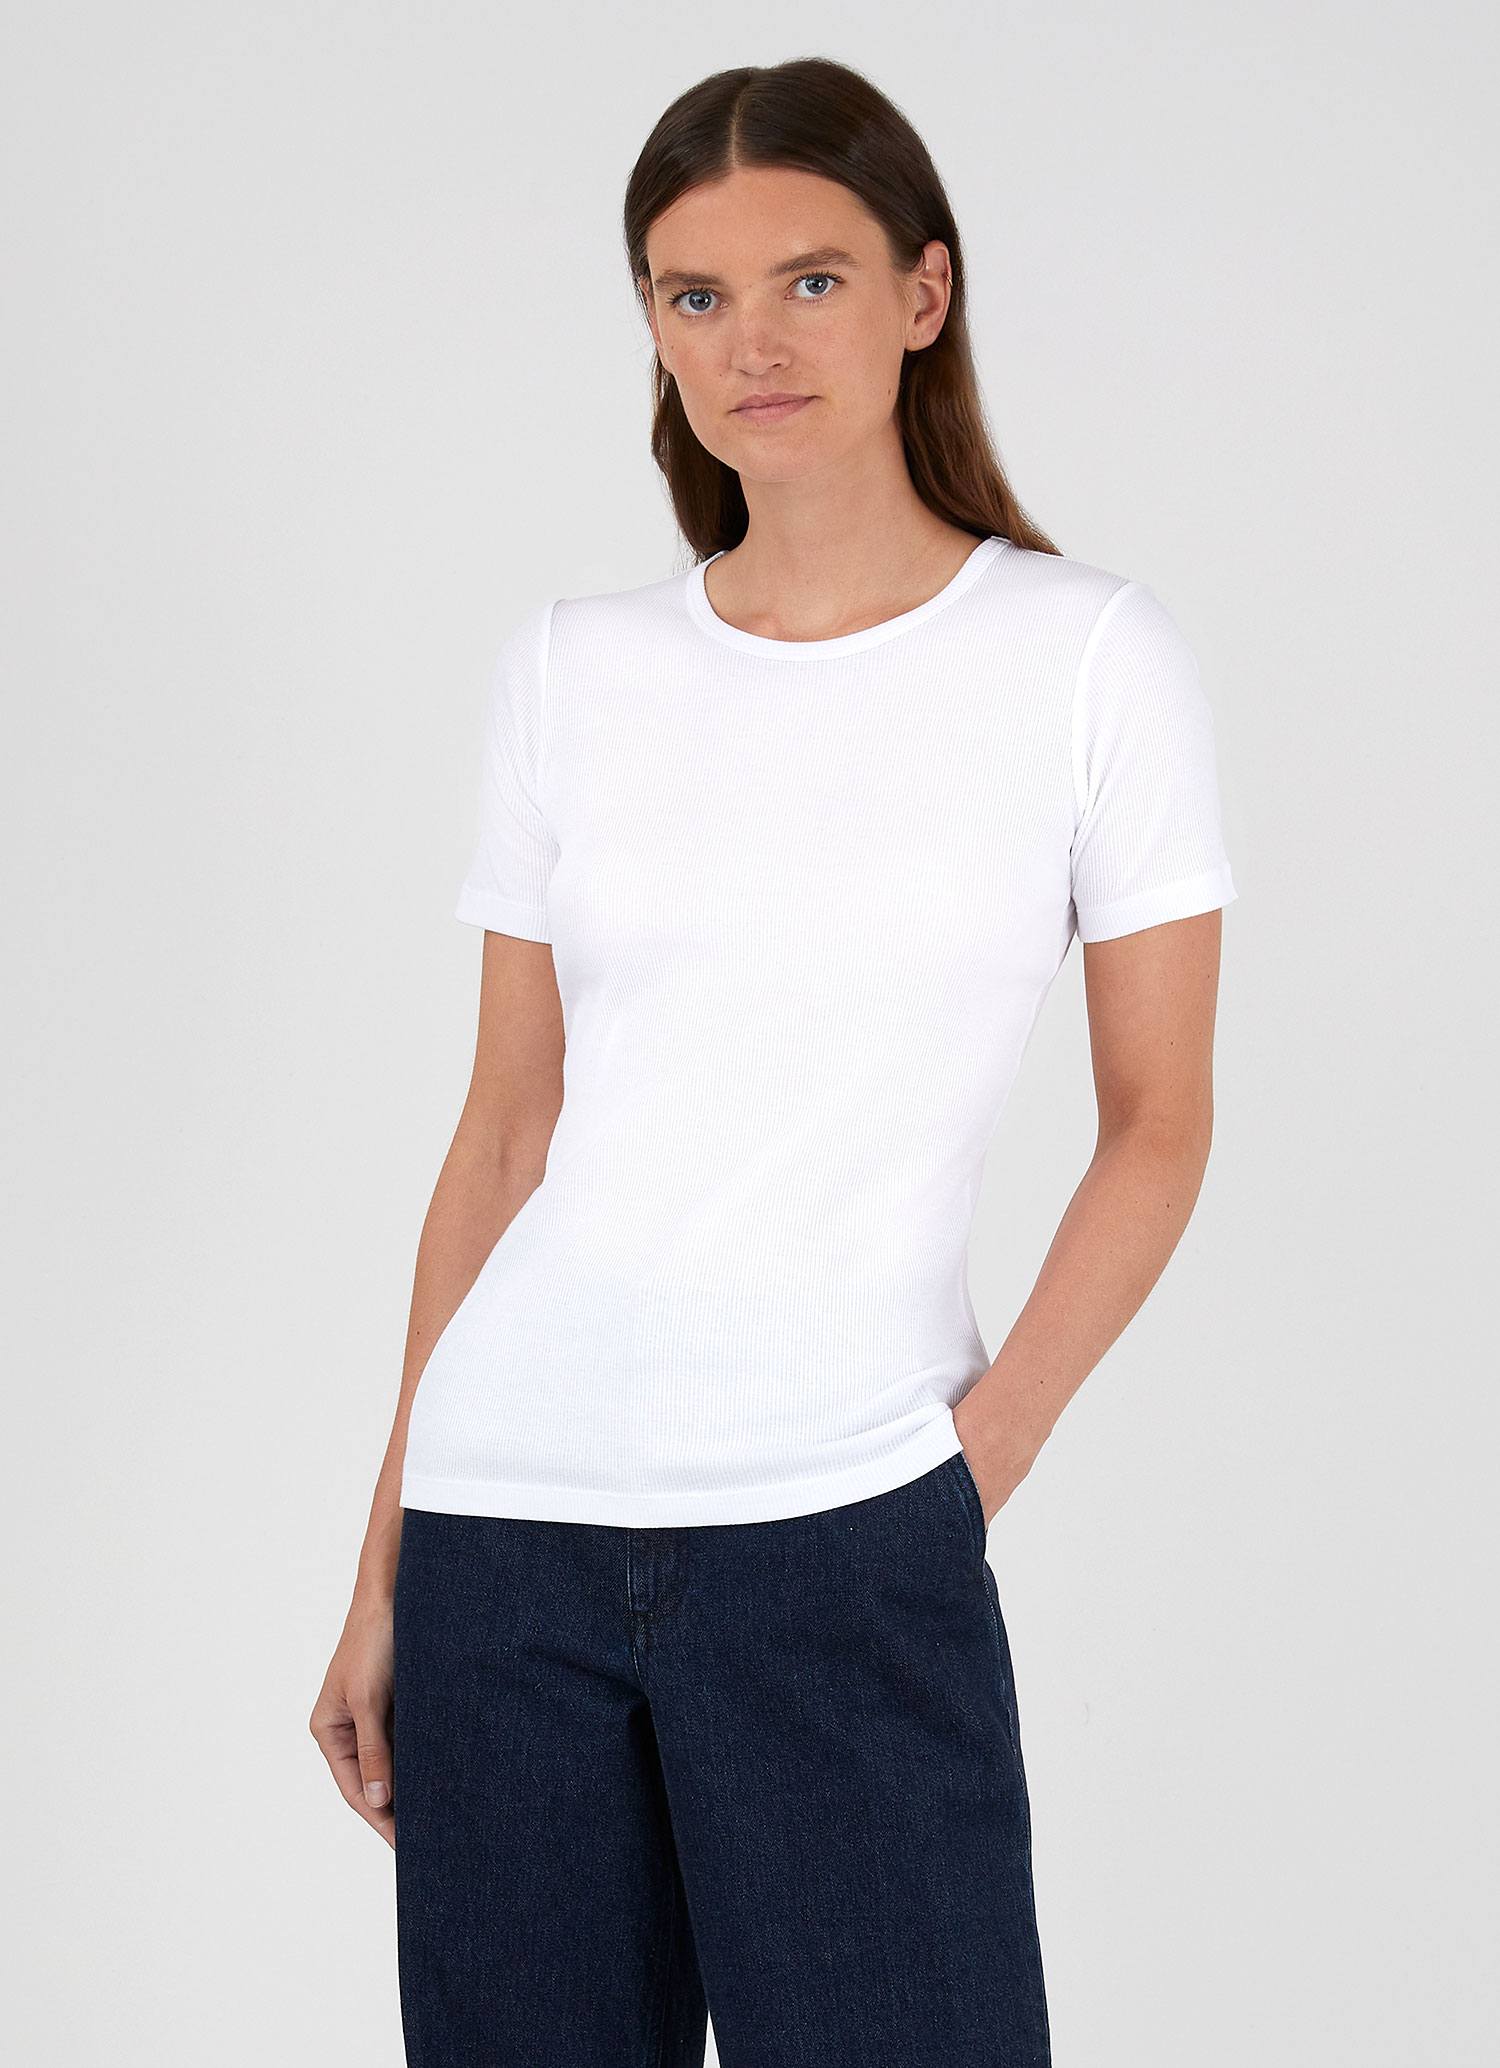 Women's Rib T-shirt in White | Sunspel